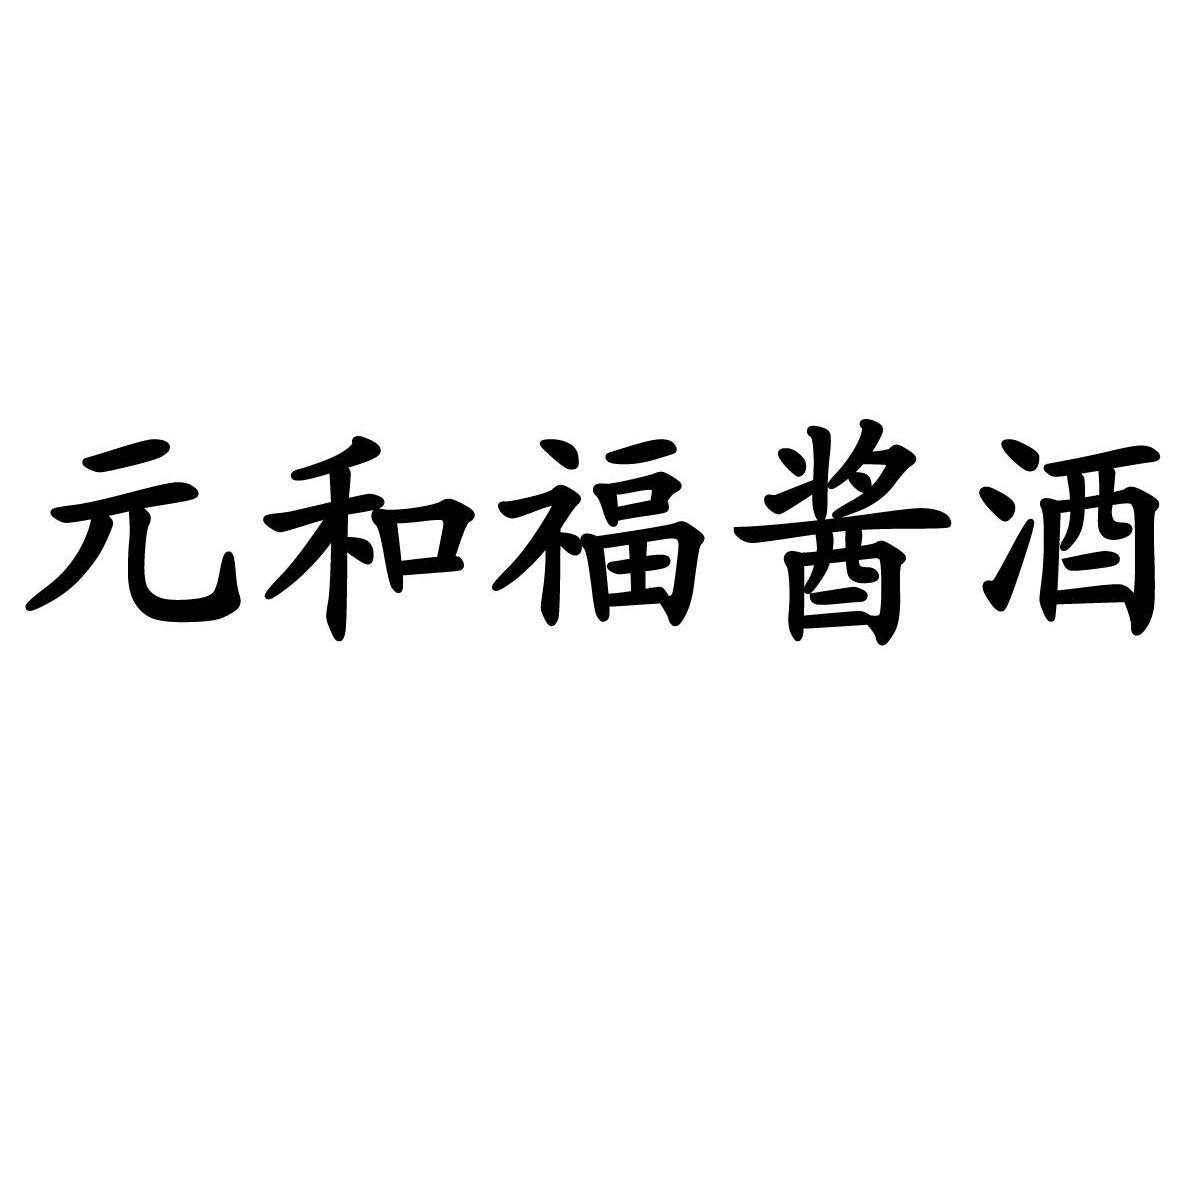 第33类-酒商标申请人:贵州省仁怀市茅台镇 元和酒厂办理/代理机构